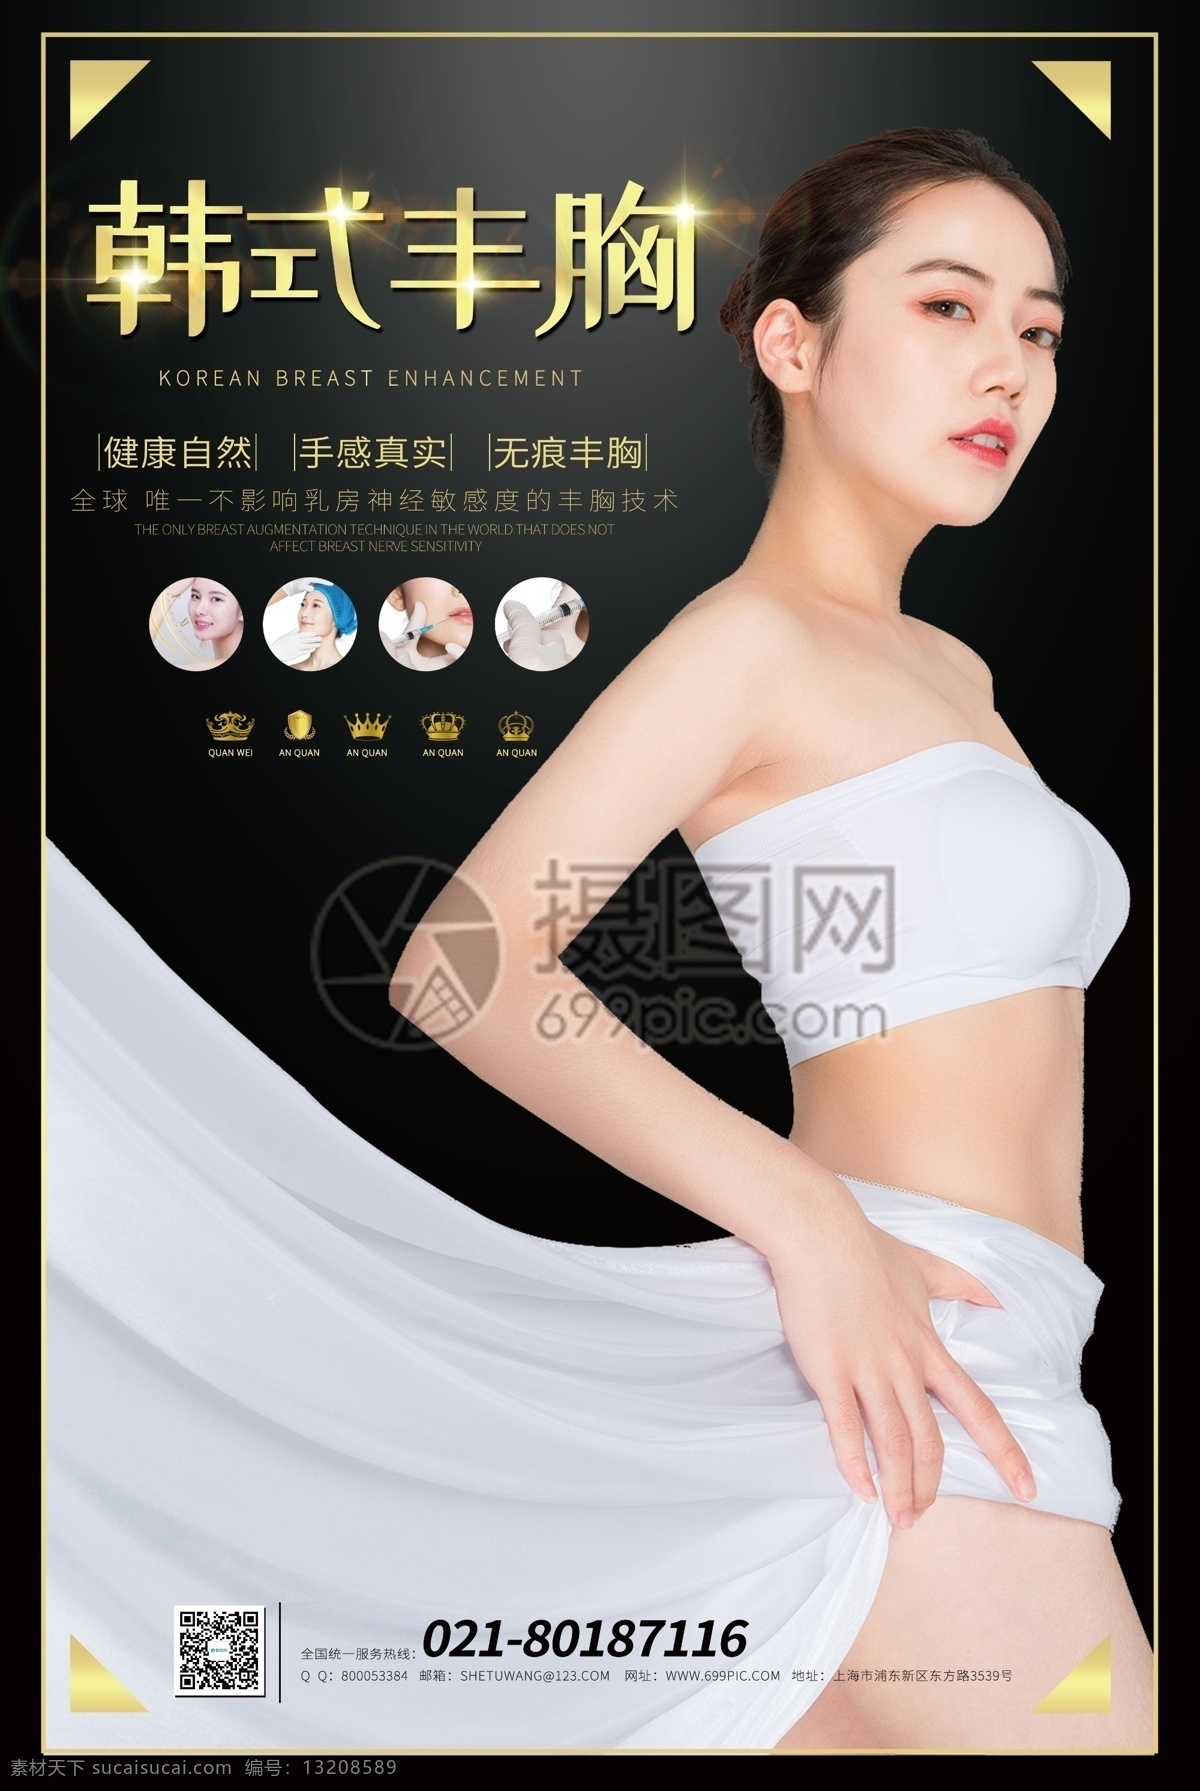 黑色 韩式丰胸海报 丰胸 女人 女性 性感 海报 胸部 隆胸 韩式